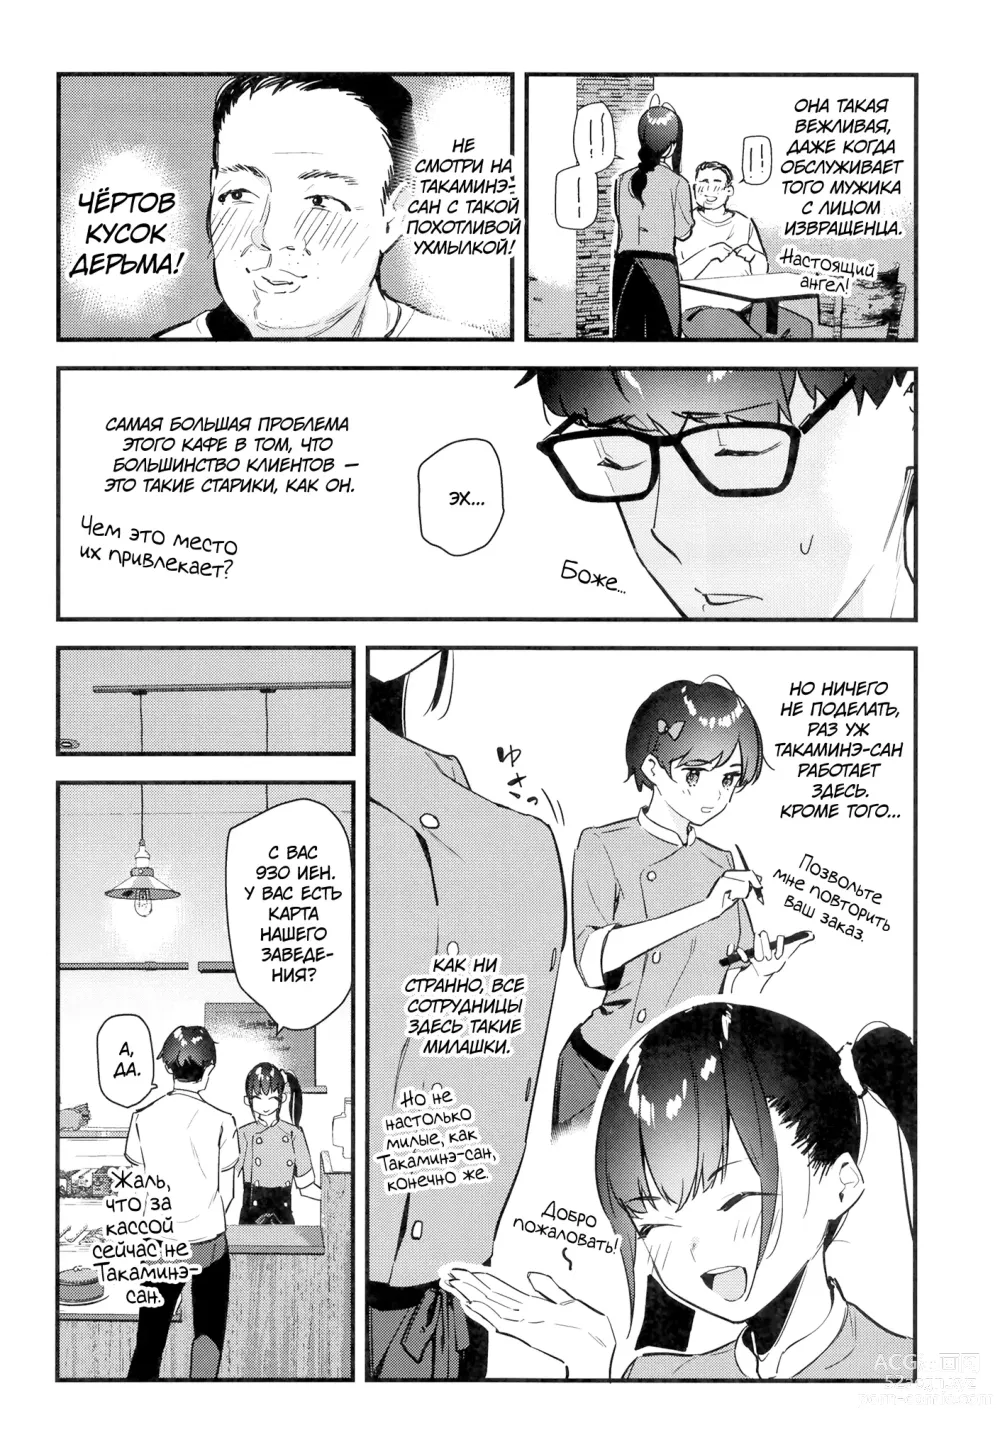 Page 7 of doujinshi Девушка, которая мне нравится, оказывает особые услуги постоянным клиентам